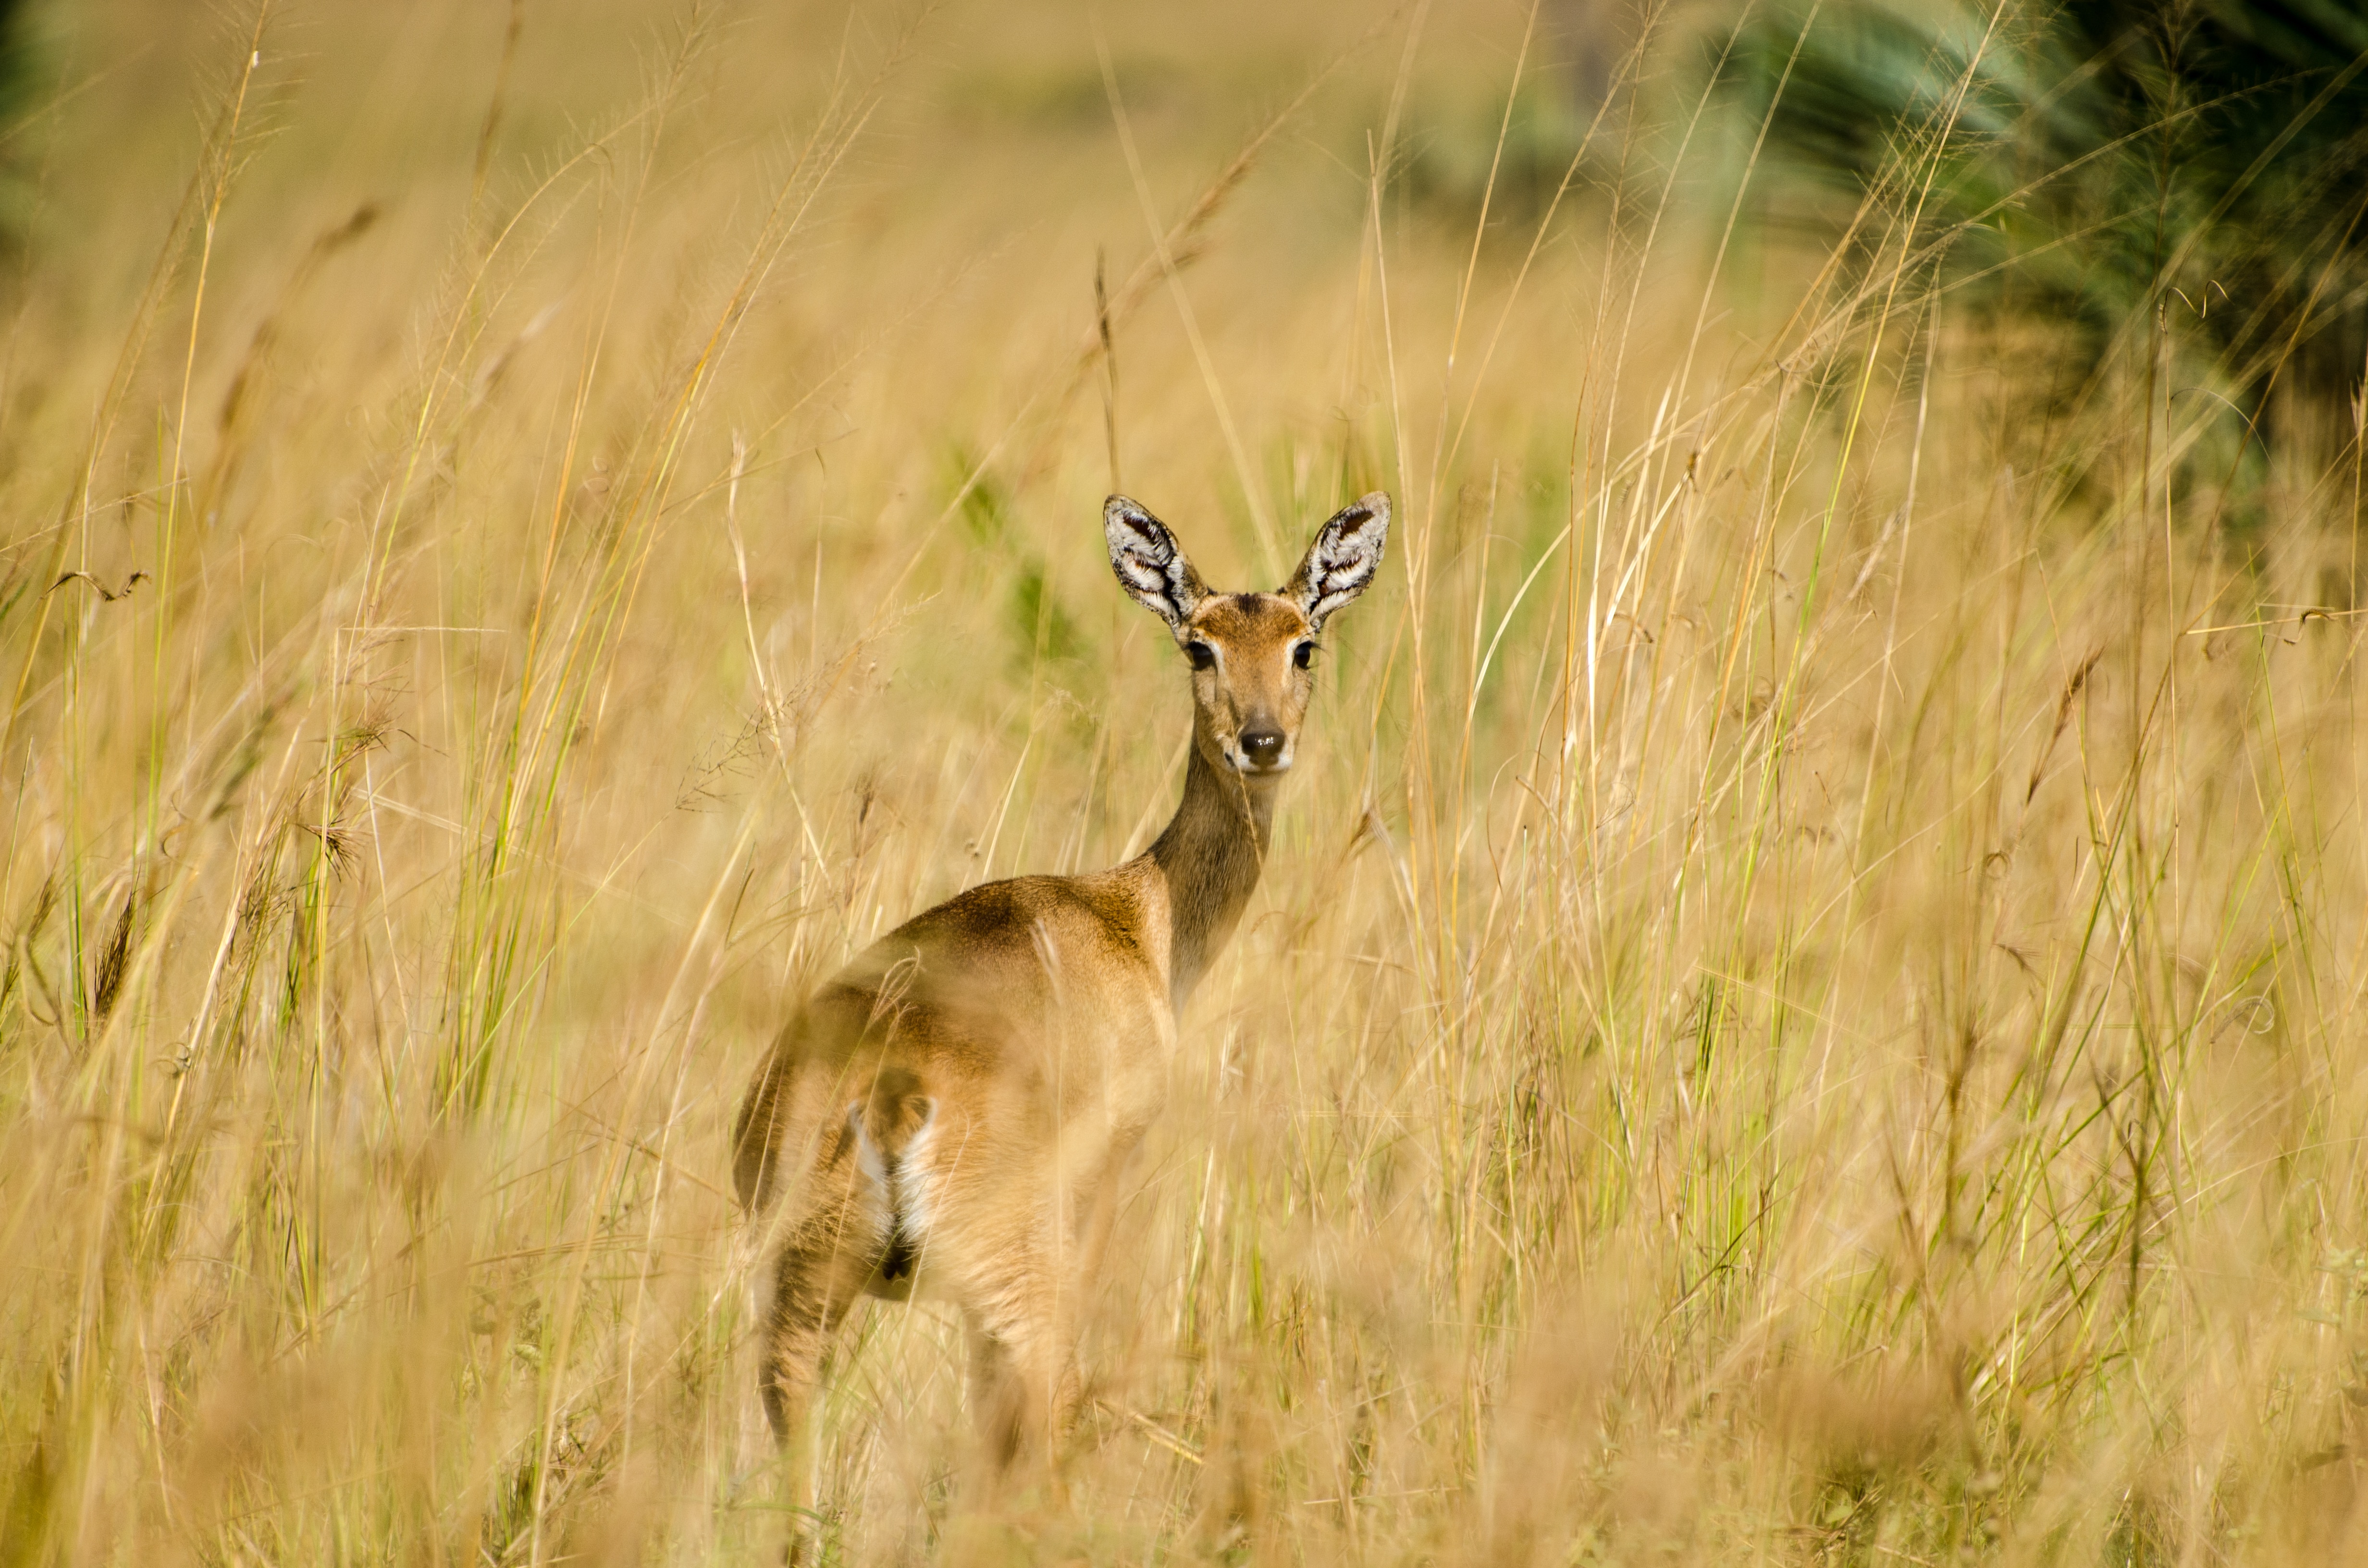 deer standing on grass field